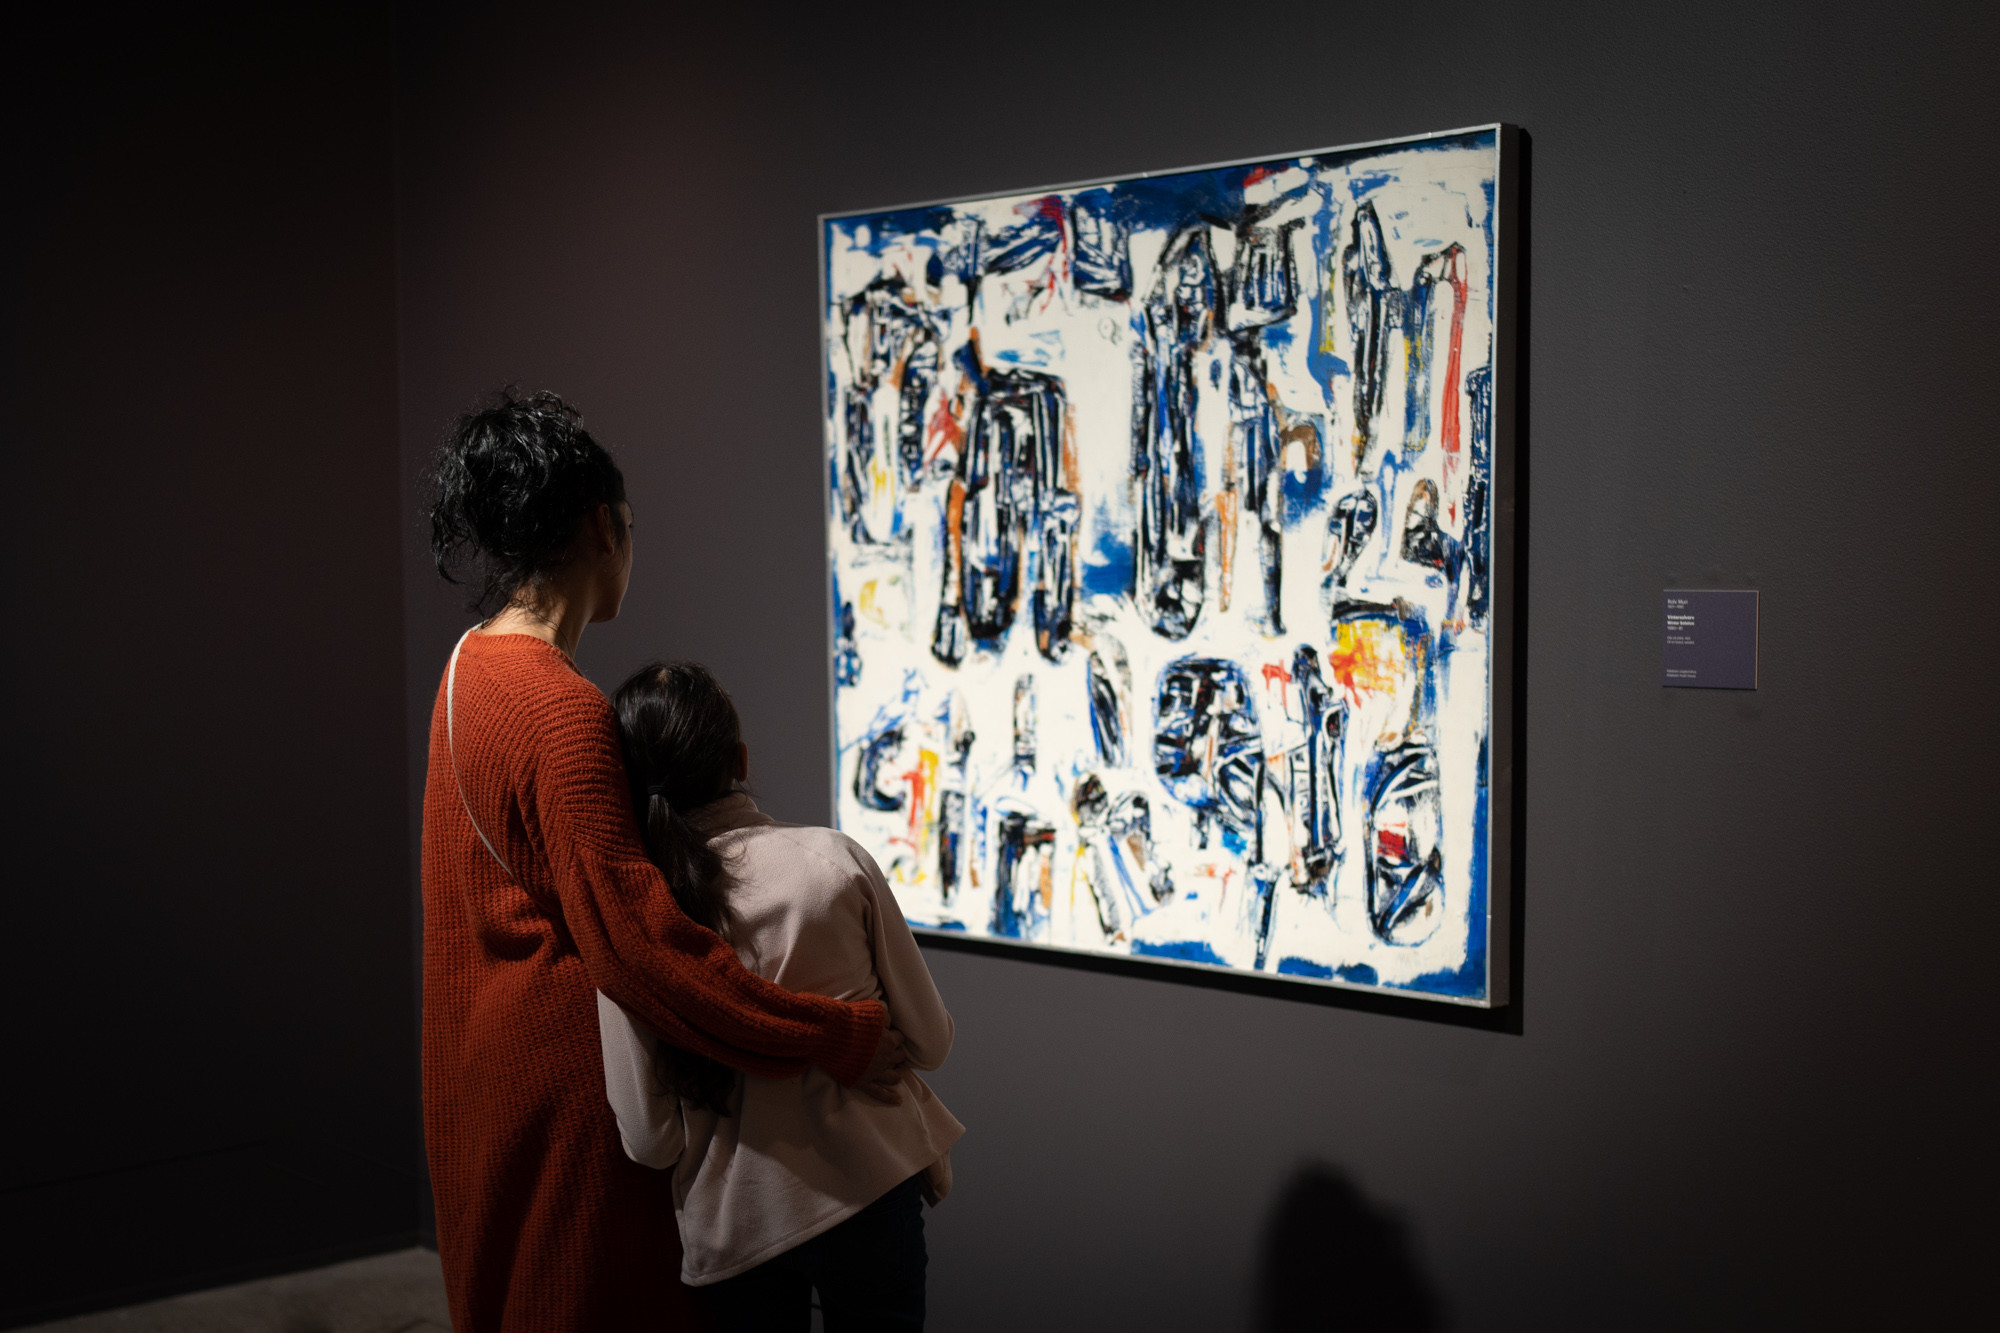 Ei vaksen kvinne og ei jente studerer eit abstrakt måleri i kvitt, blått og svart.